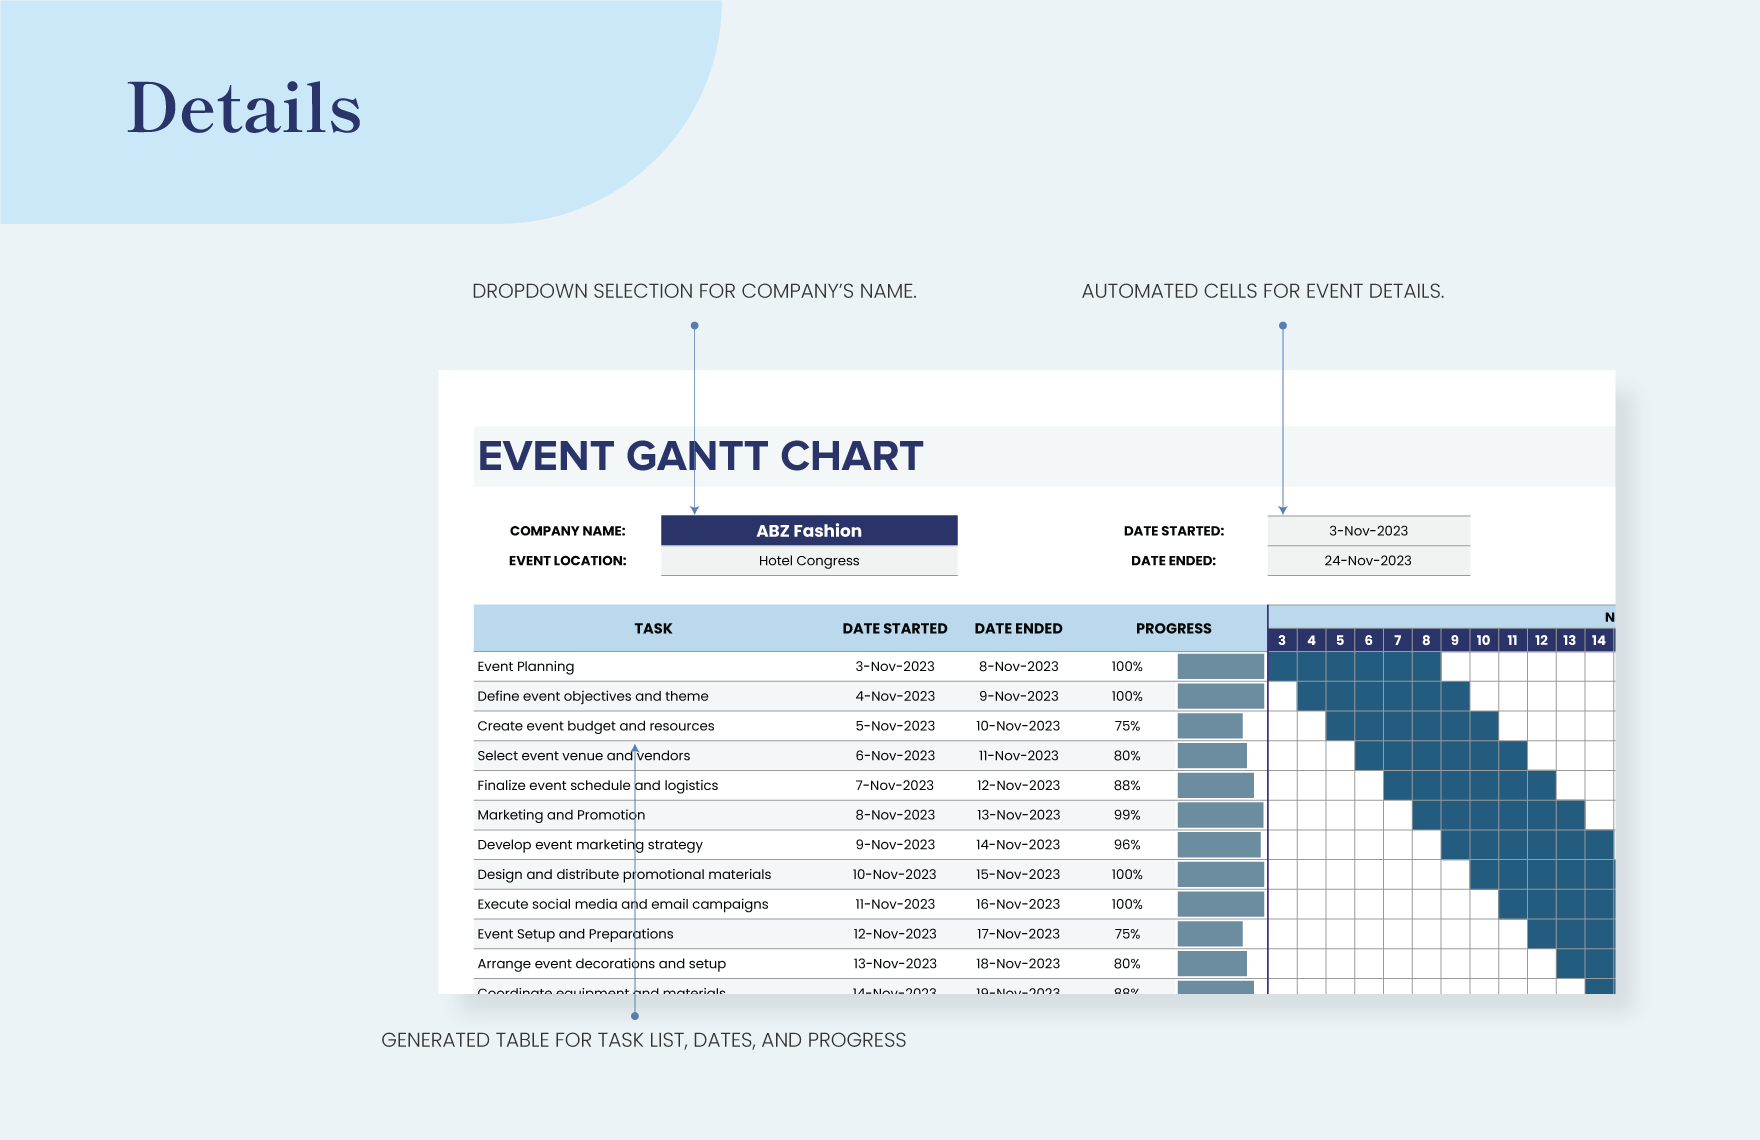 Event Gantt Chart Template